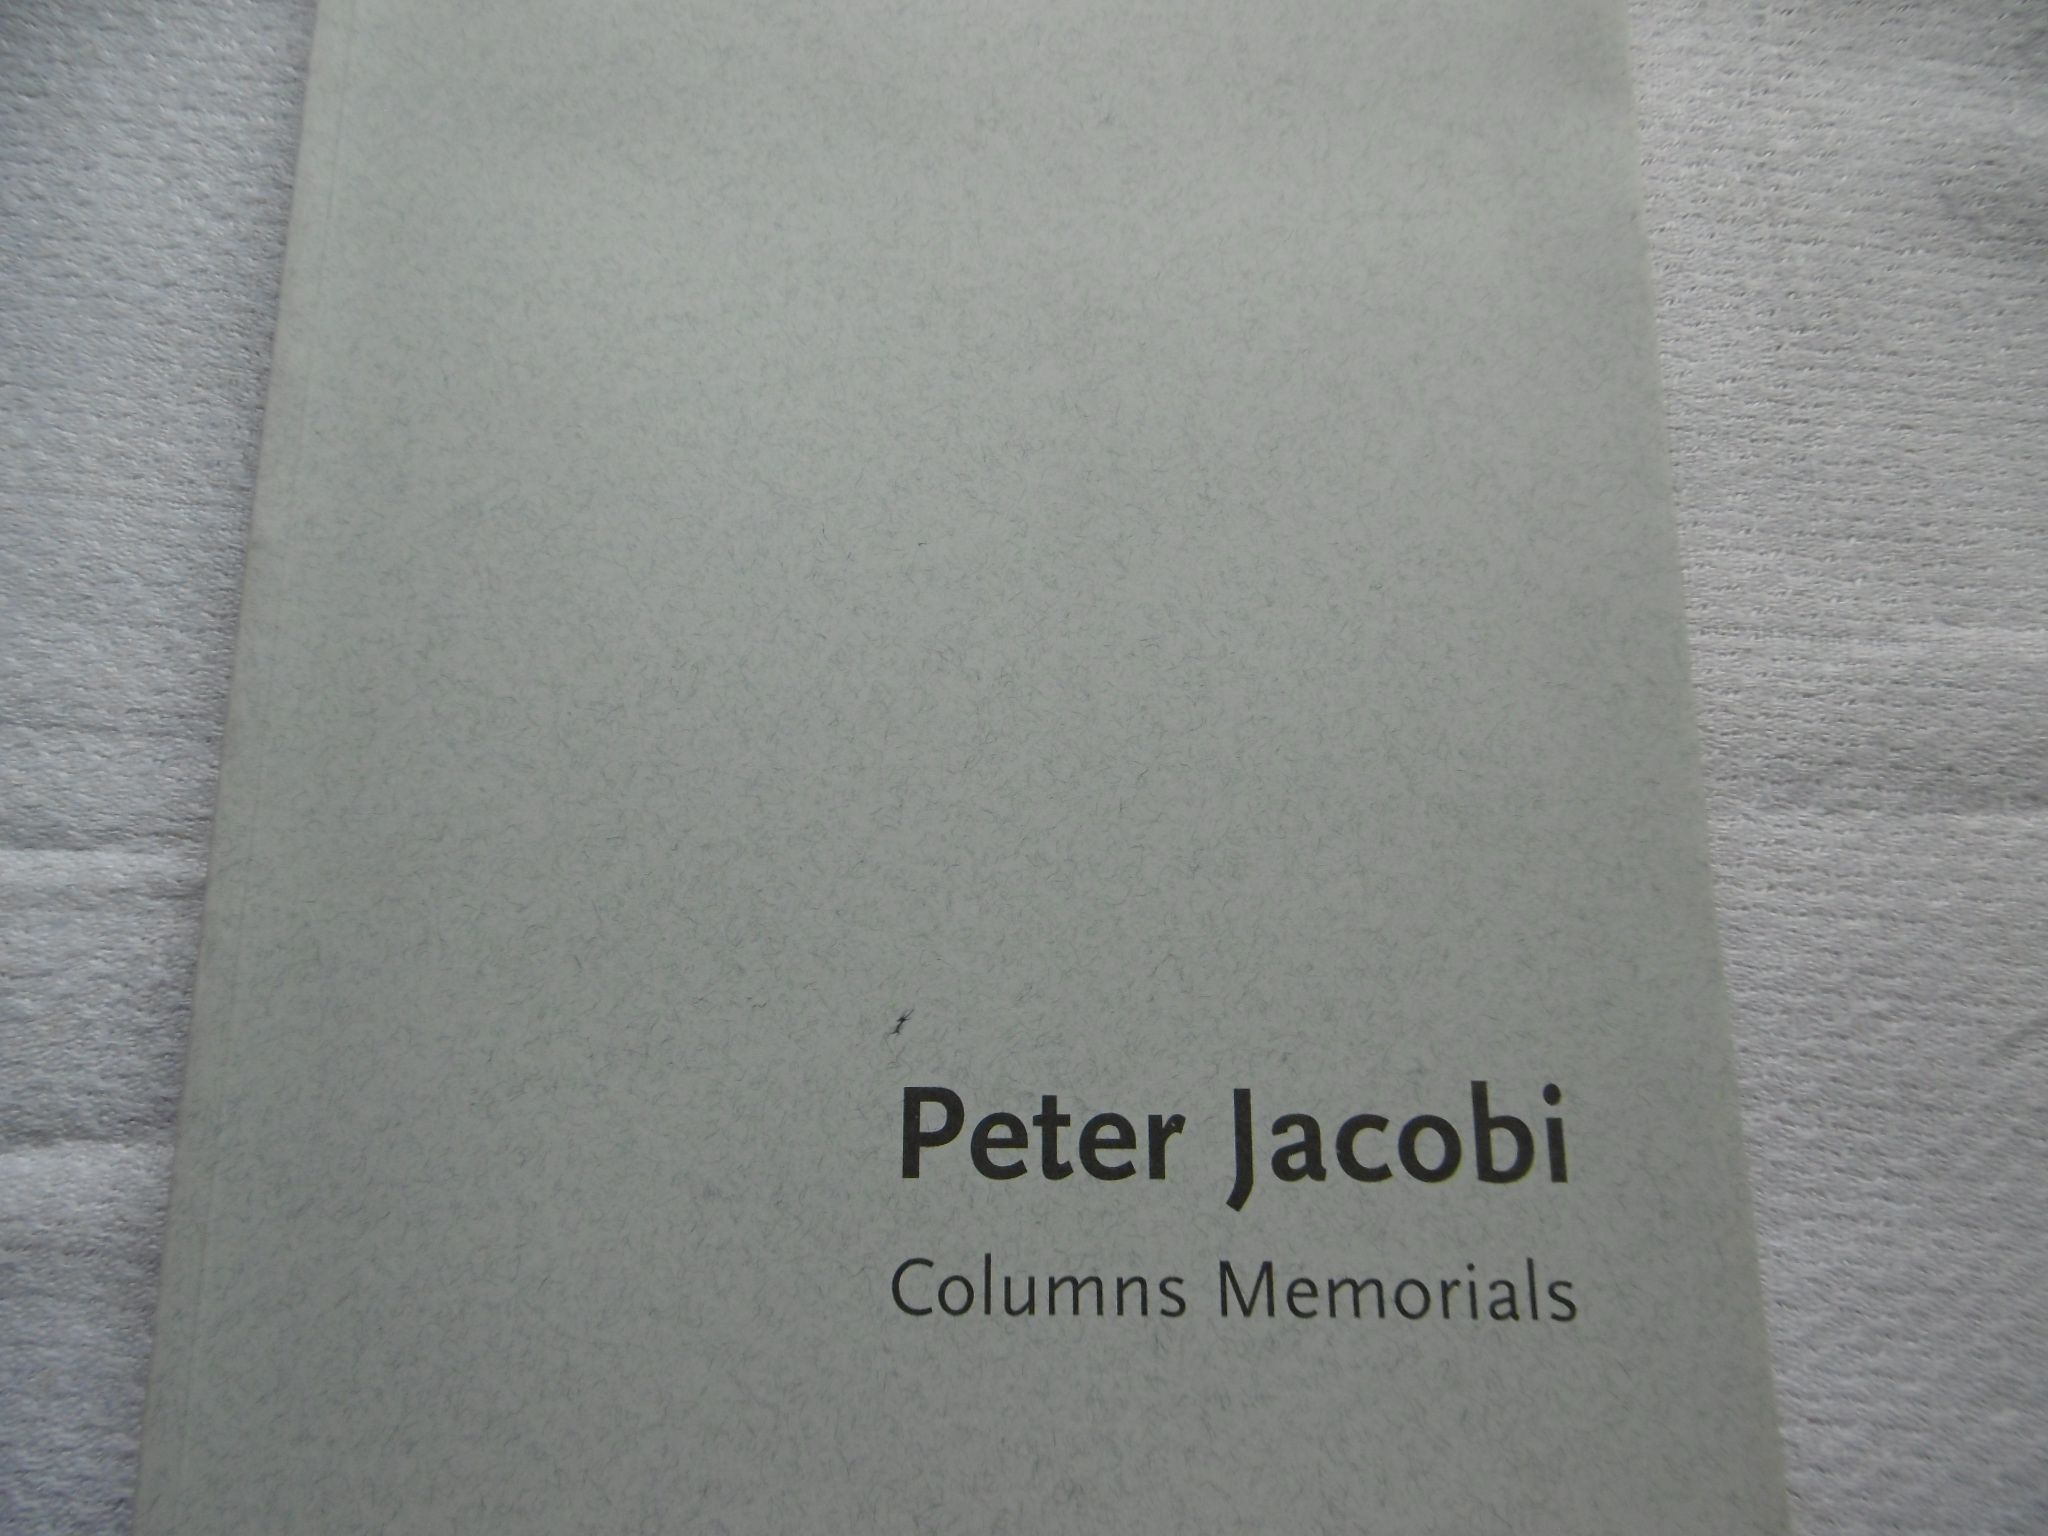 Peter Jacobi - Columns Memorials - Museum Ostdeutsche Galerie Regensburg 24.10-21.11. 1999 - Peter Jacobi